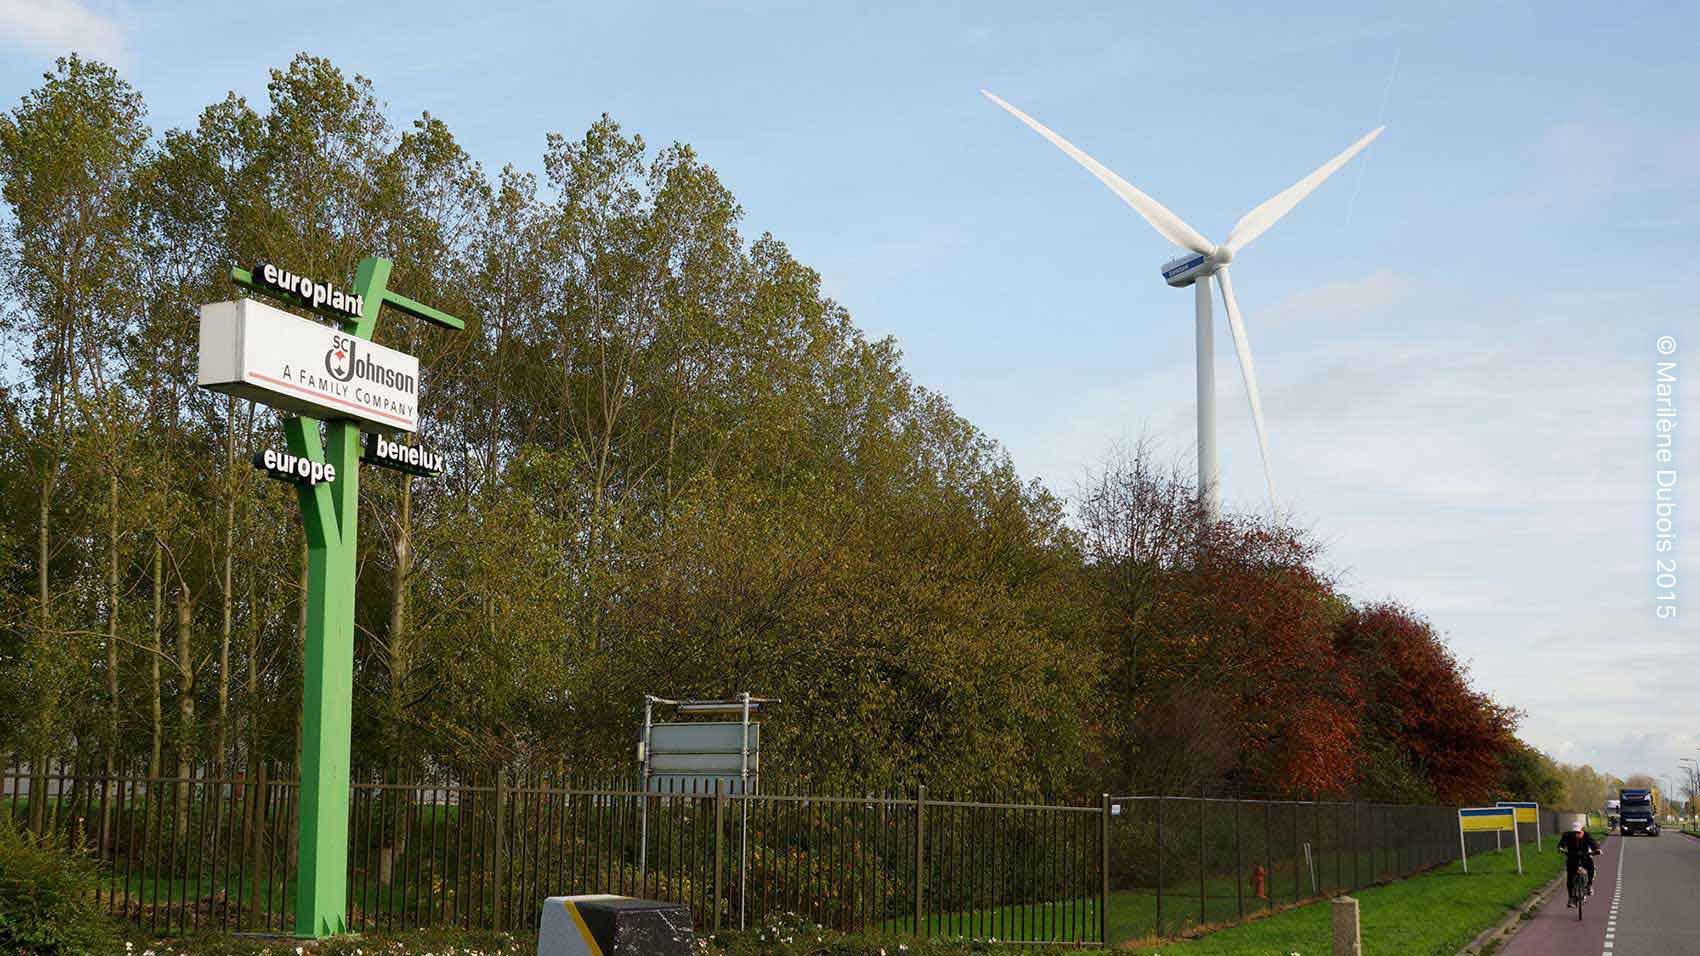 SC Johnson installe des éoliennes à ses installations européennes pour être plus écoresponsable